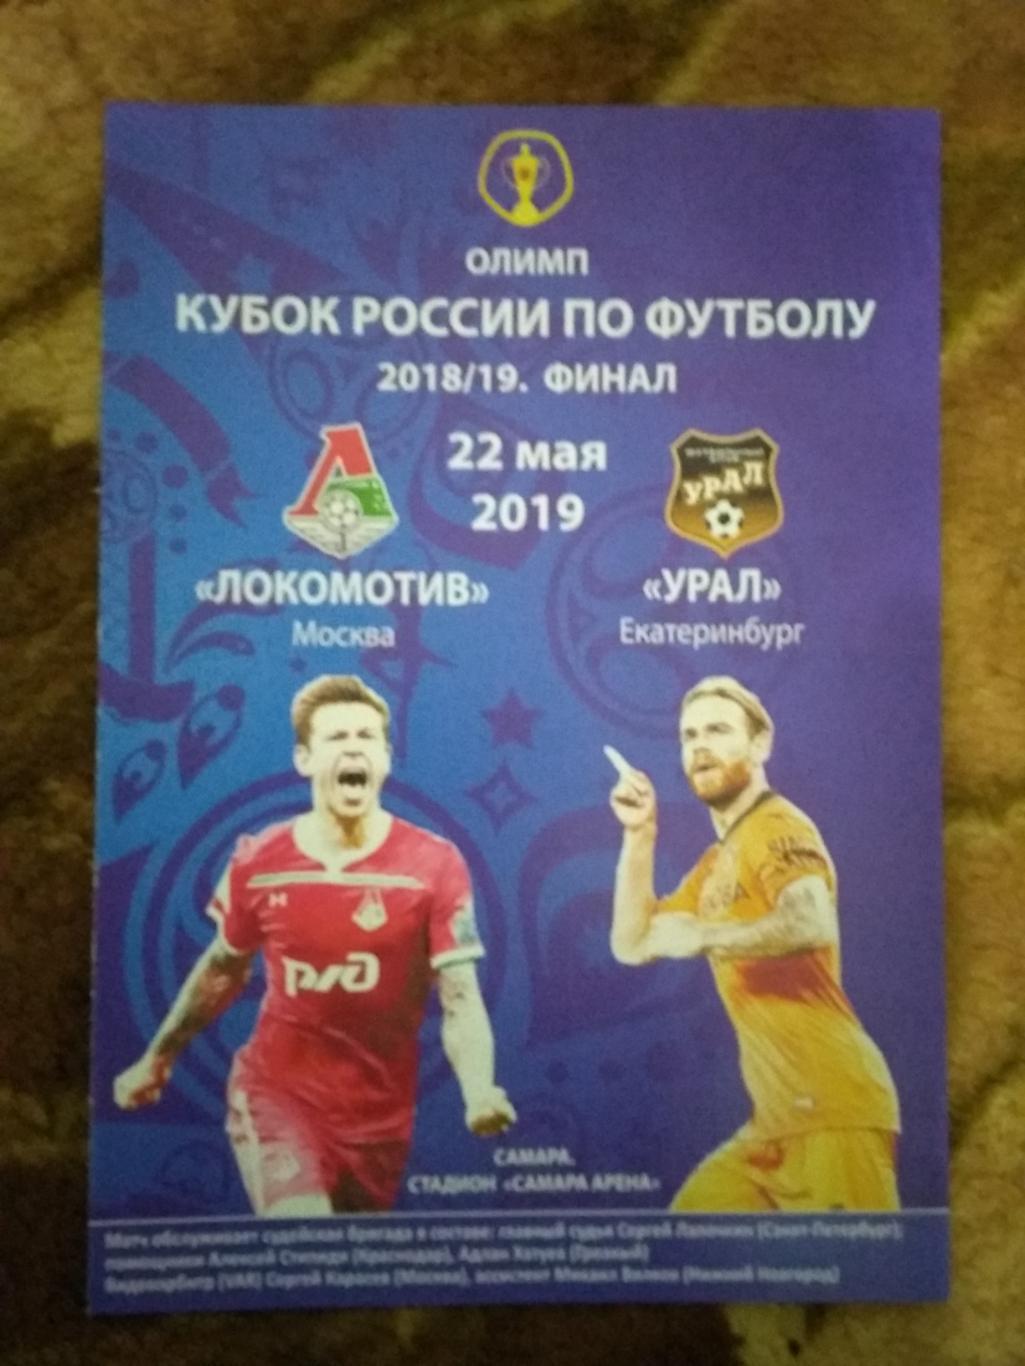 Локомотив (Москва) - Урал (Екатеринбург).Кубок России финал 2019.(Погорелов).